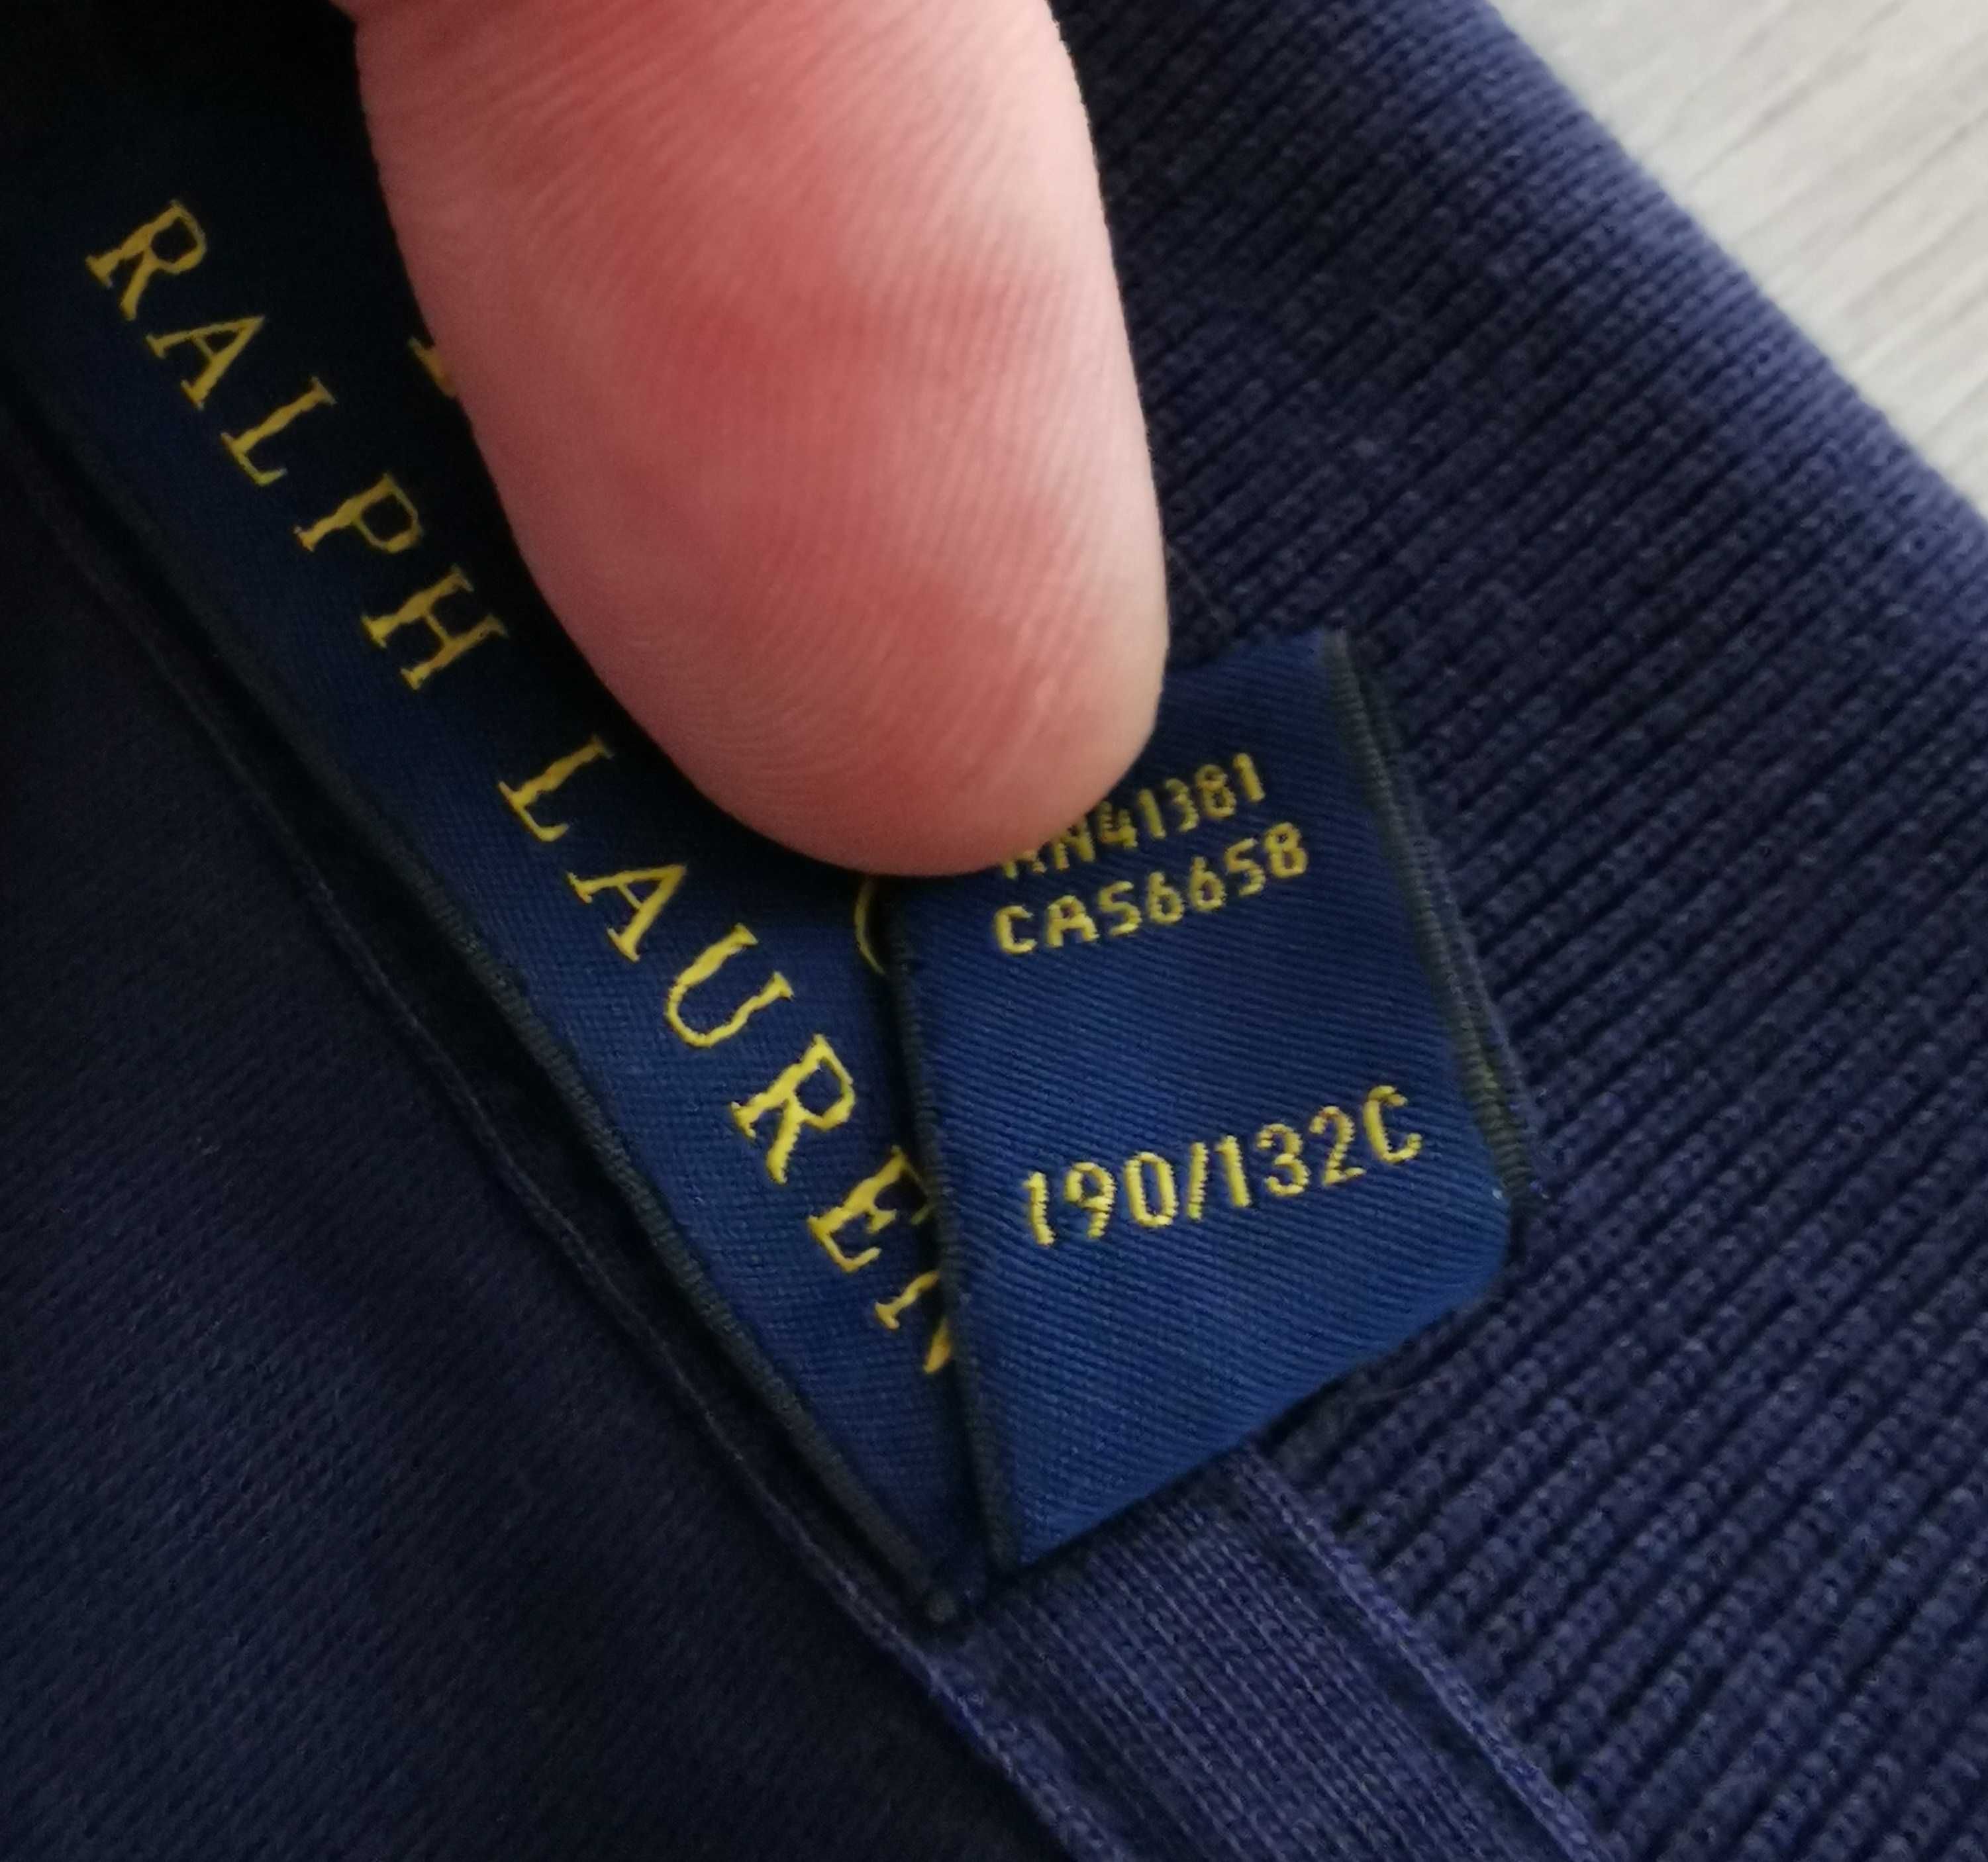 T-shirt polo Ralph Lauren rozmiar plus size 5XL/6XL wyszywane logo